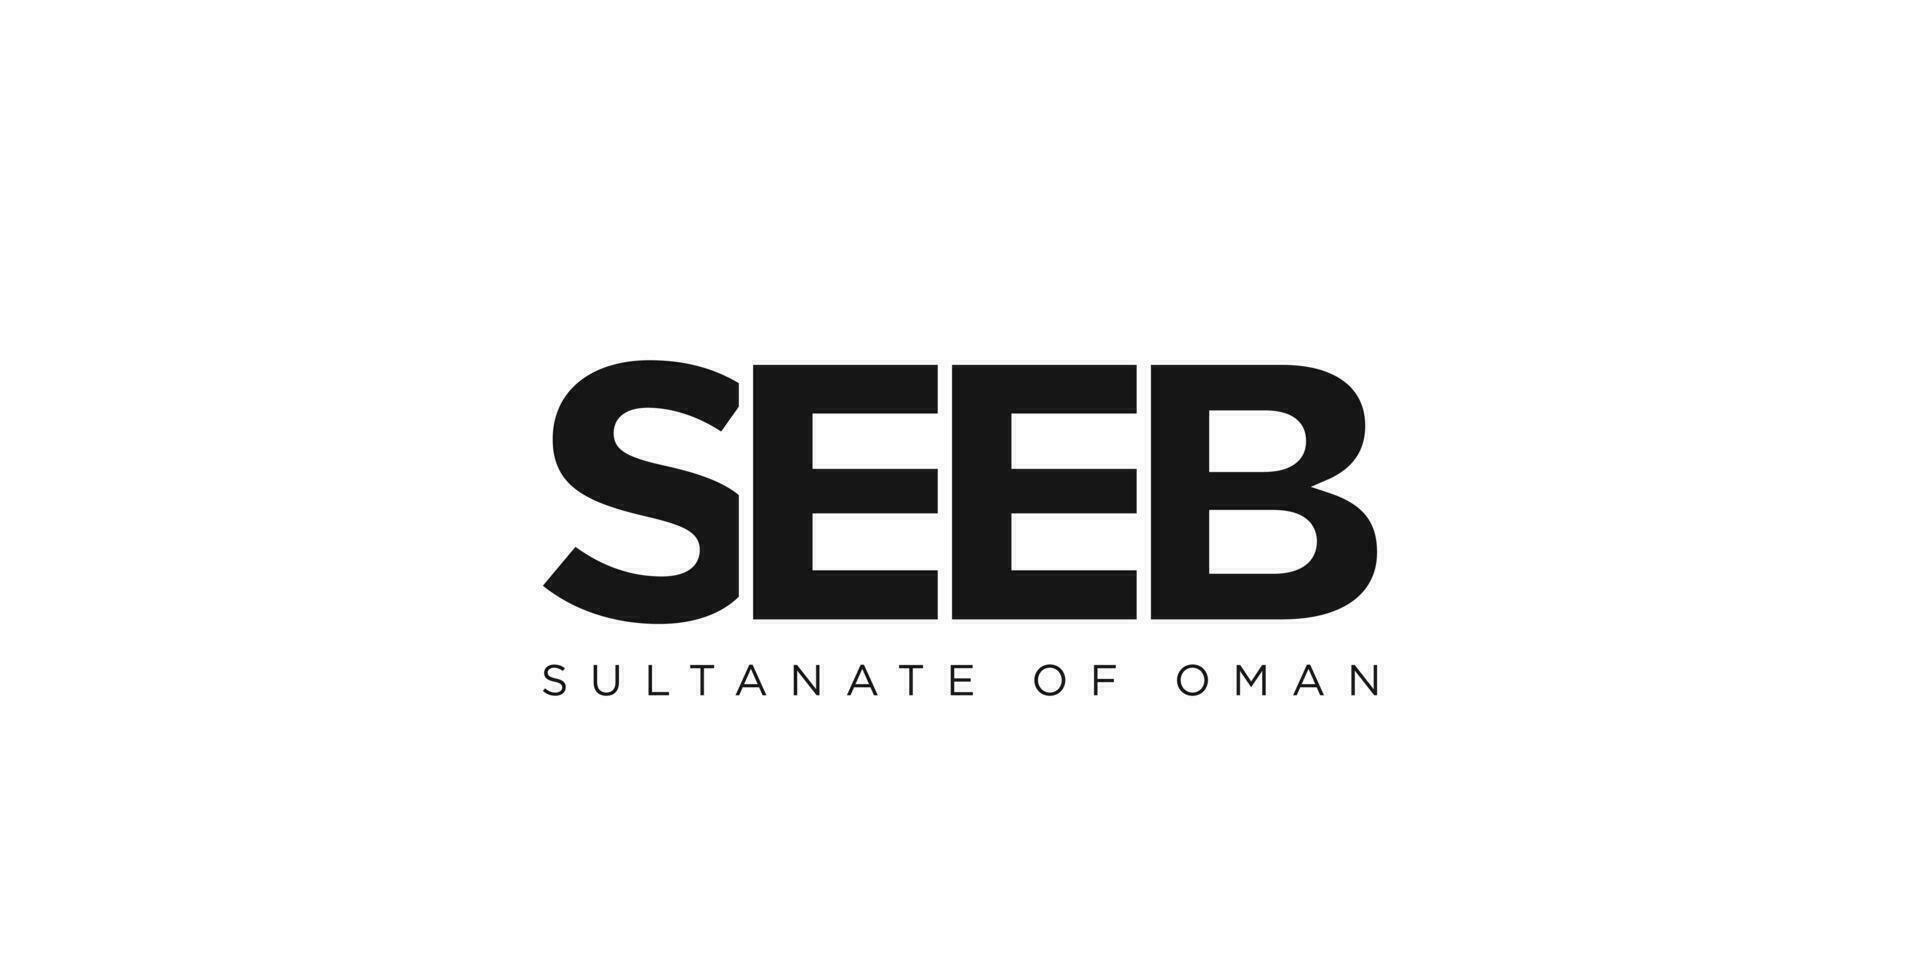 zie in de Oman embleem. de ontwerp Kenmerken een meetkundig stijl, vector illustratie met stoutmoedig typografie in een modern lettertype. de grafisch leuze belettering.